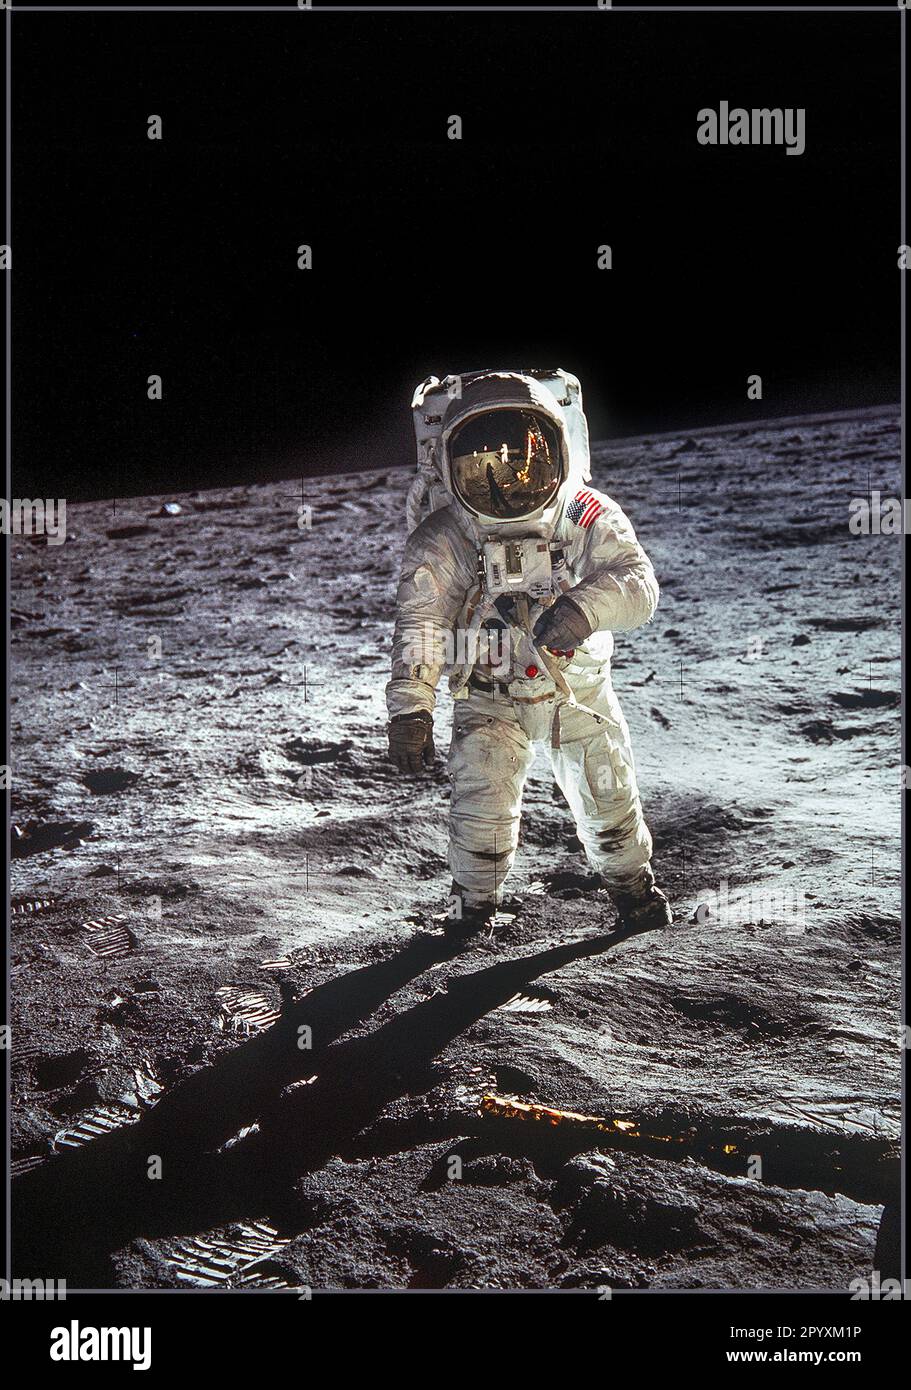 APOLLO 11. 20. Juli 1969 Astronaut Buzz Aldrin, Pilot des LUNAR-Moduls, geht auf der Oberfläche des Mondes nahe dem Bein des LUNAR-Moduls (LM) „Eagle“ während der Apollo 11 Extravehicle Activity (EVA). Astronaut Neil A. Armstrong, Commander, machte dieses Foto mit einer 70mm-mm-Mondkamera. Während die Astronauten Armstrong und Aldrin im Lunar Module (LM) „Eagle“ hinabstiegen, um die Region Sea of Tranquility des Mondes zu erkunden, blieb Astronaut Michael Collins, Pilot des Kommandomoduls, bei den Command and Service Modules (CSM) „Columbia“ in der Mondumlaufbahn. Stockfoto